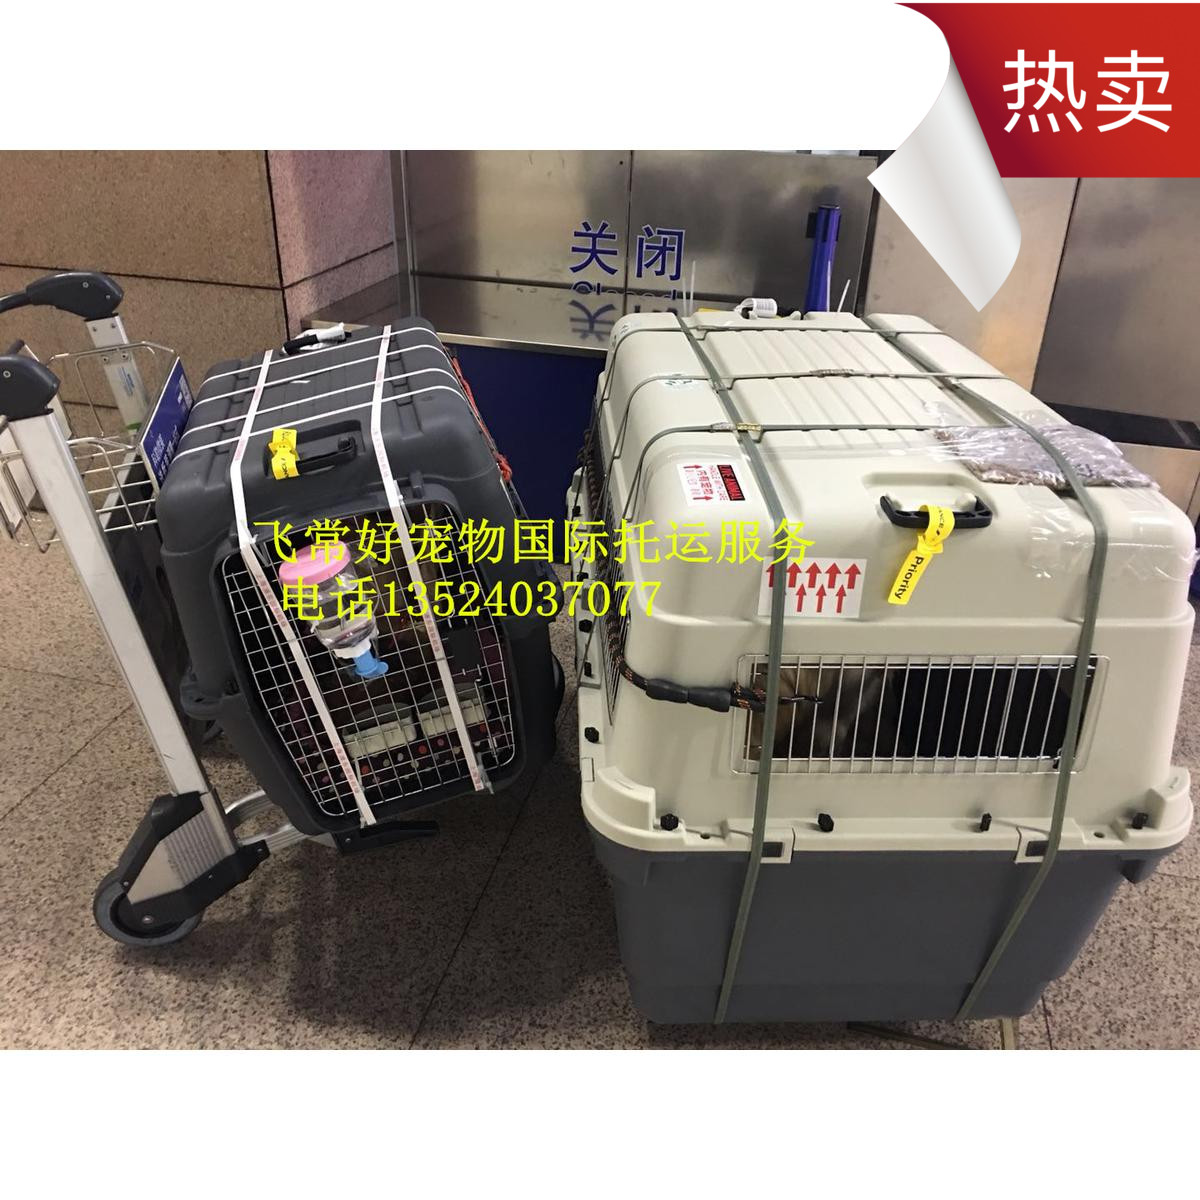 宠物托运北京上海广州深圳成都等国际猫狗空运火车出国回国免隔离